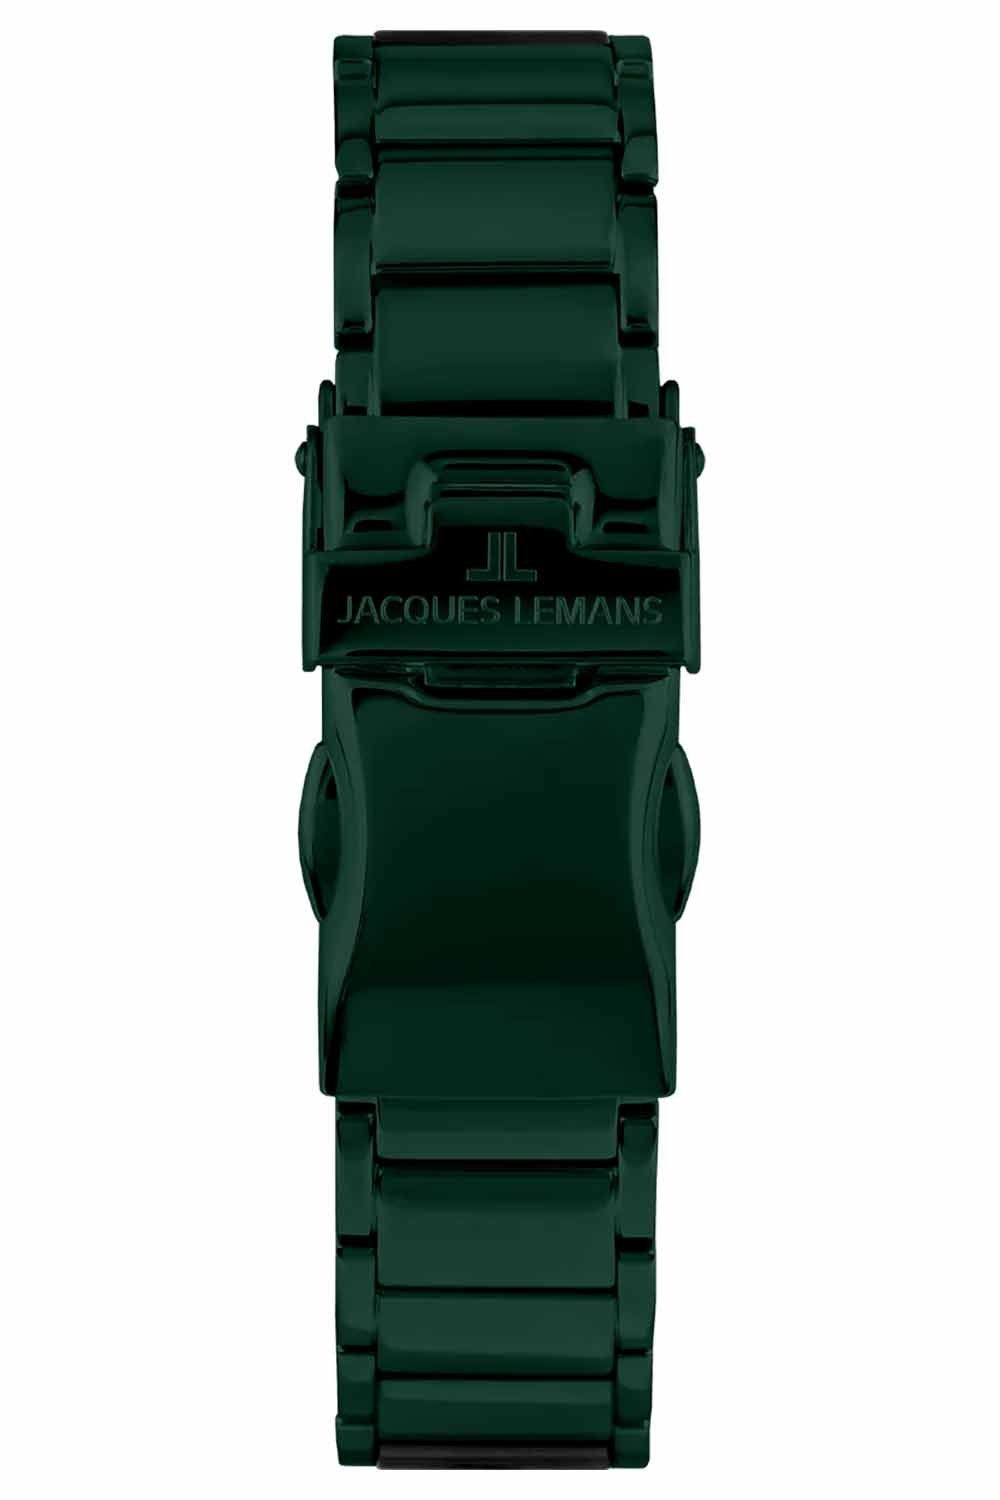 Unisex Grün/Schwarz Quarzuhr Armbanduhr Monaco Lemans Jacques